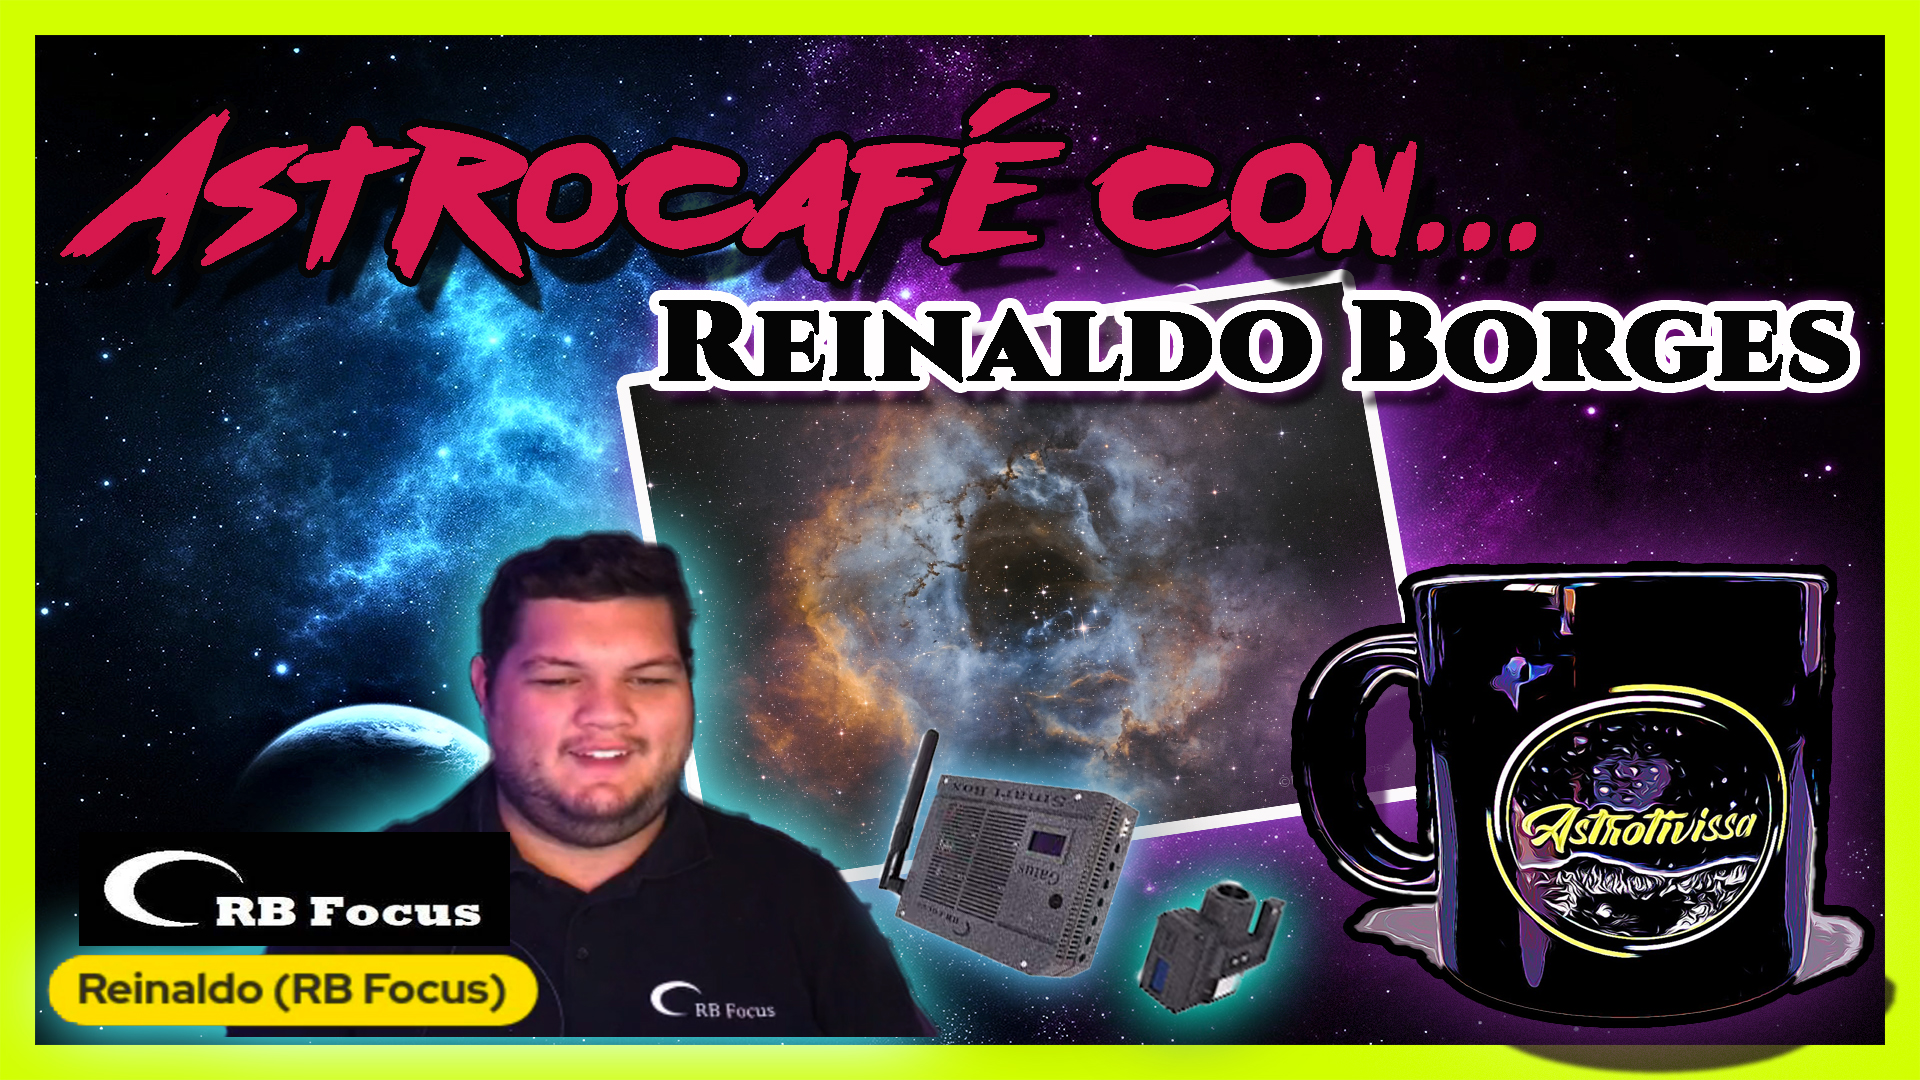 Astrocafé con… REINALDO BORGES de RB FOCUS | Astrofotografía sin secretos